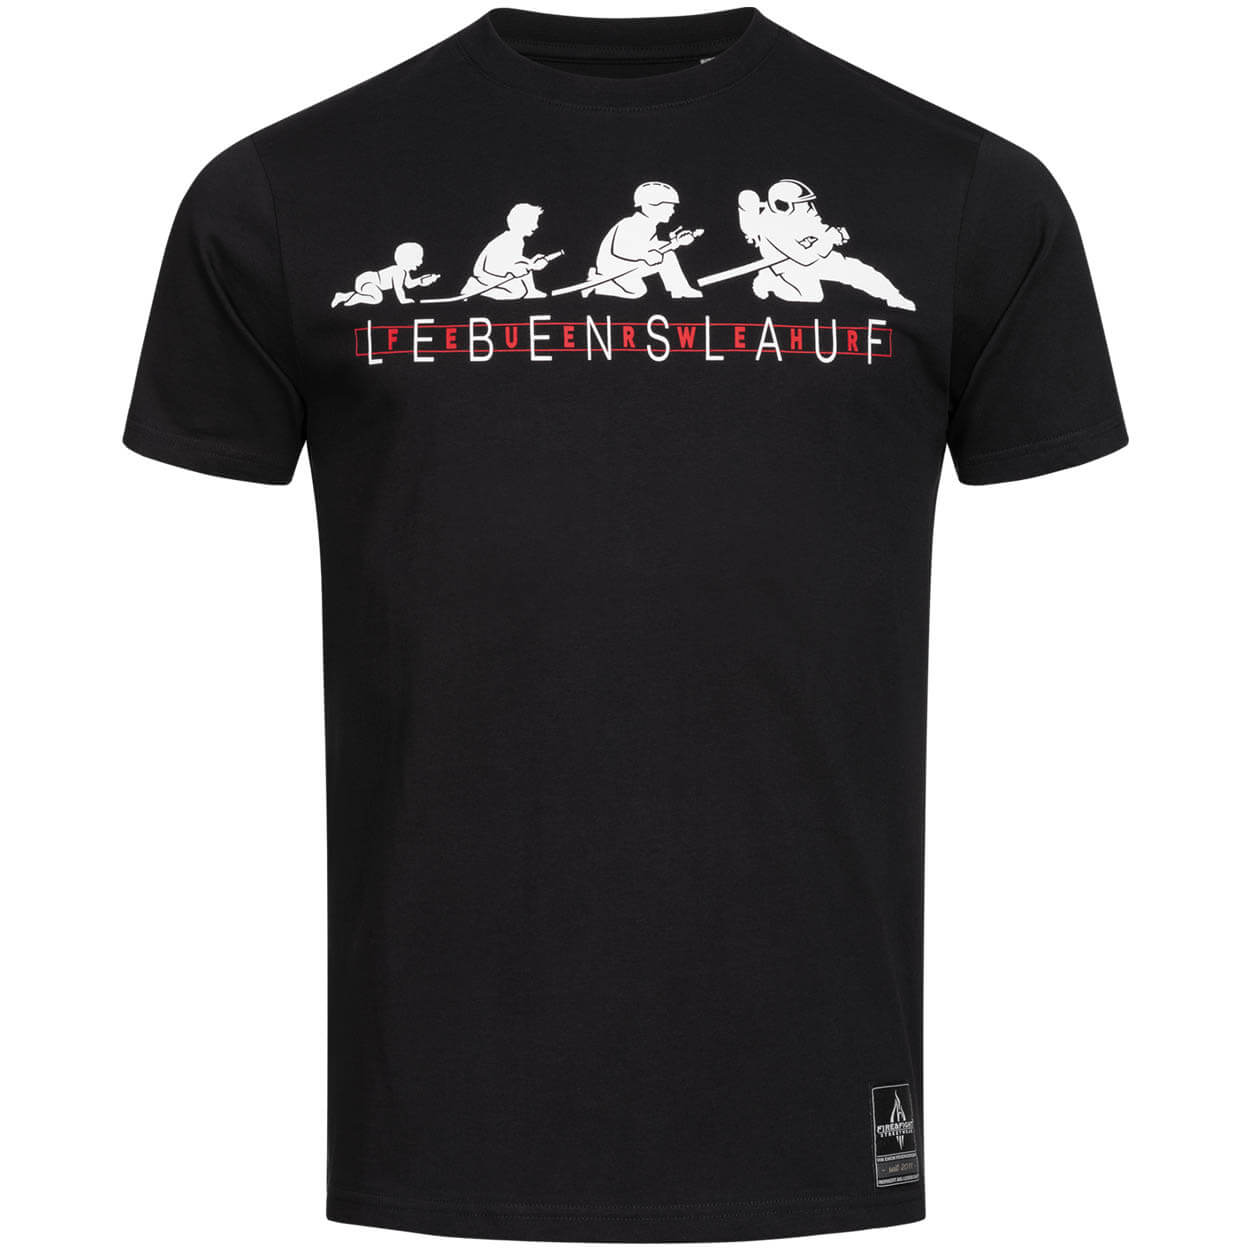 Lebenslauf Feuerwehr - Männer T-Shirt schwarz